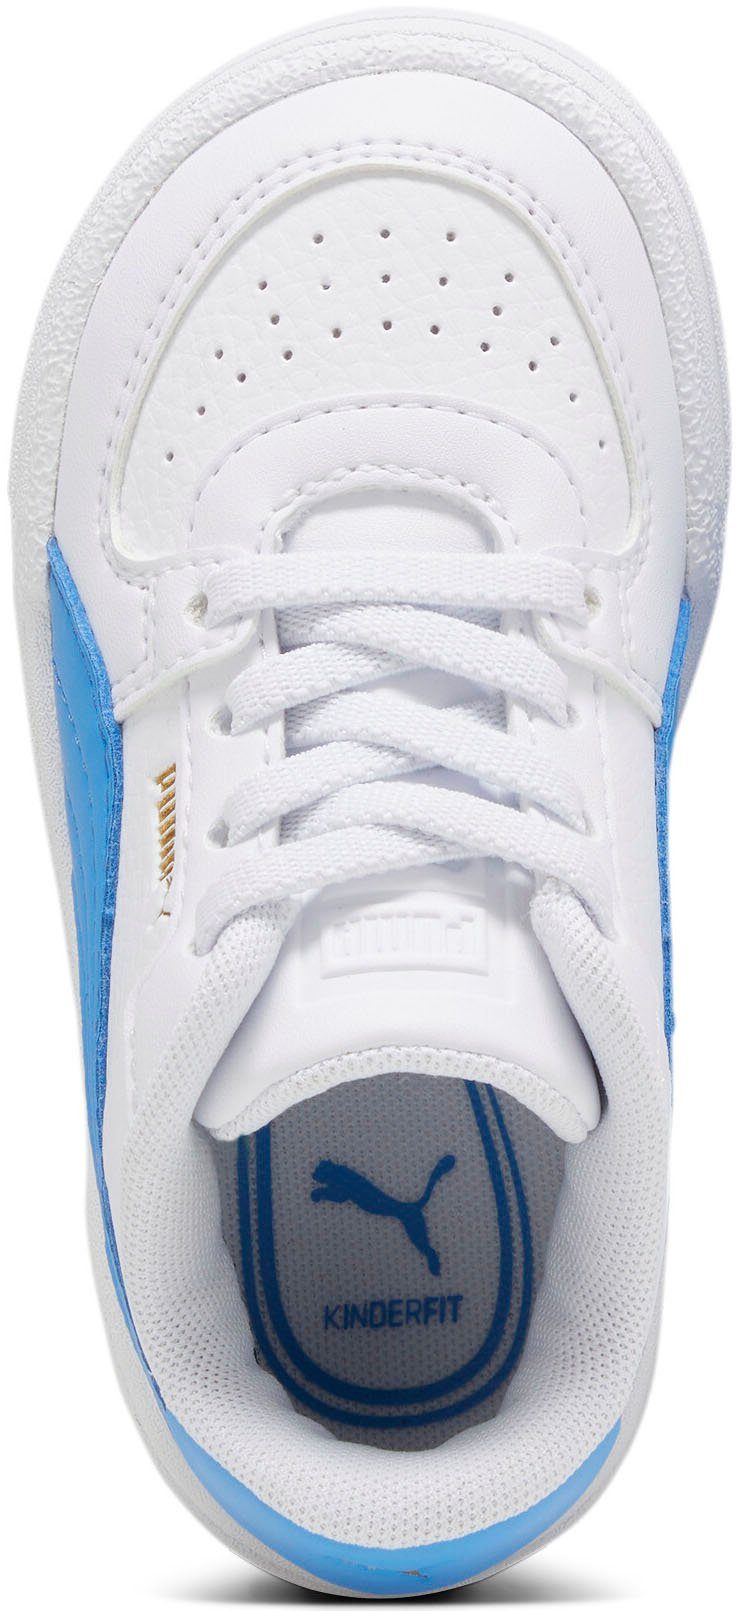 PUMA CA PRO CLASSIC AC Blue PUMA INF White-Regal Sneaker